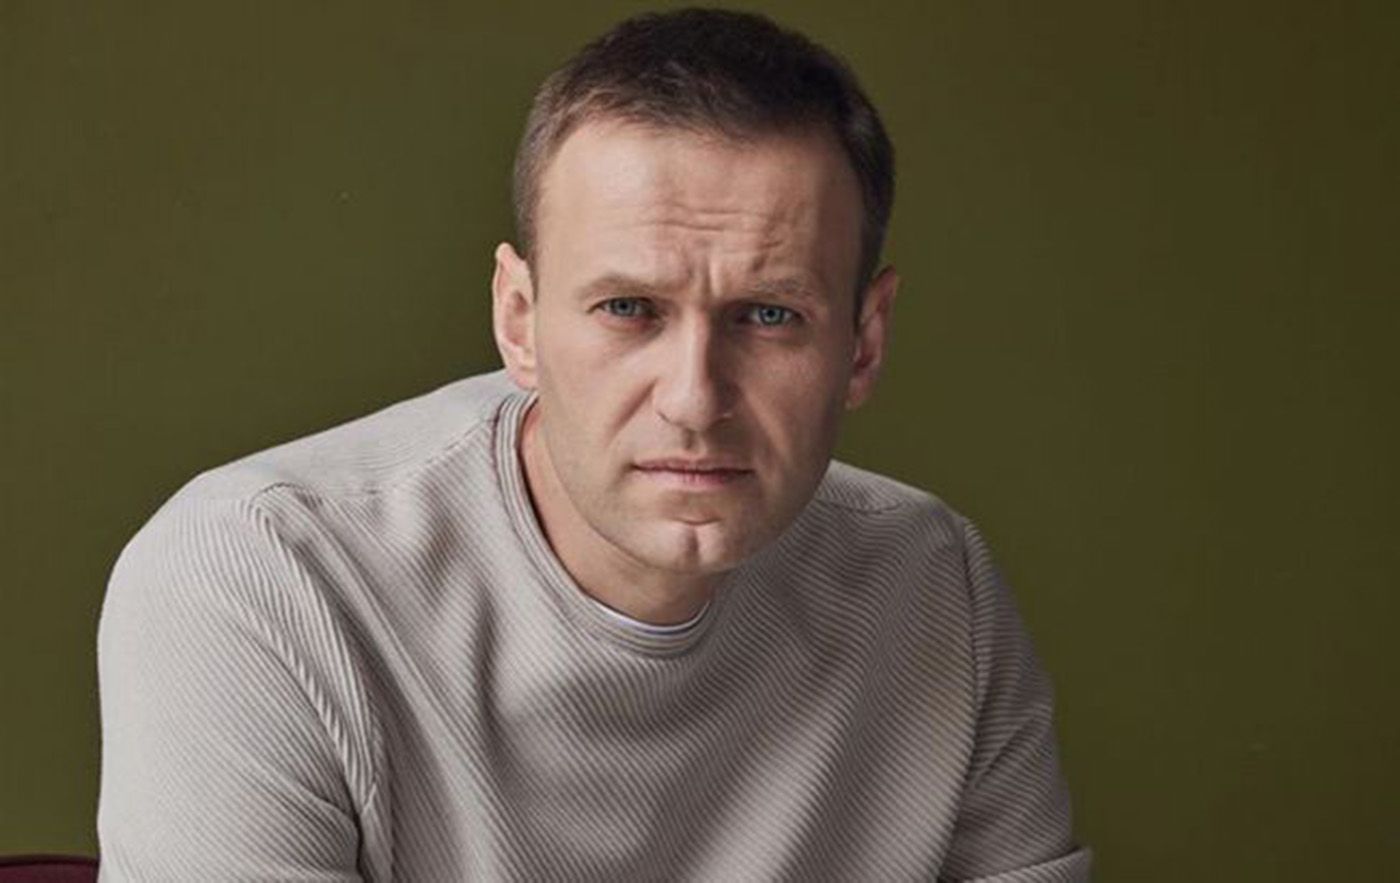 Тело у российских следователей, - команда Навального рассказала детали смерти критика Путина - 24 Канал